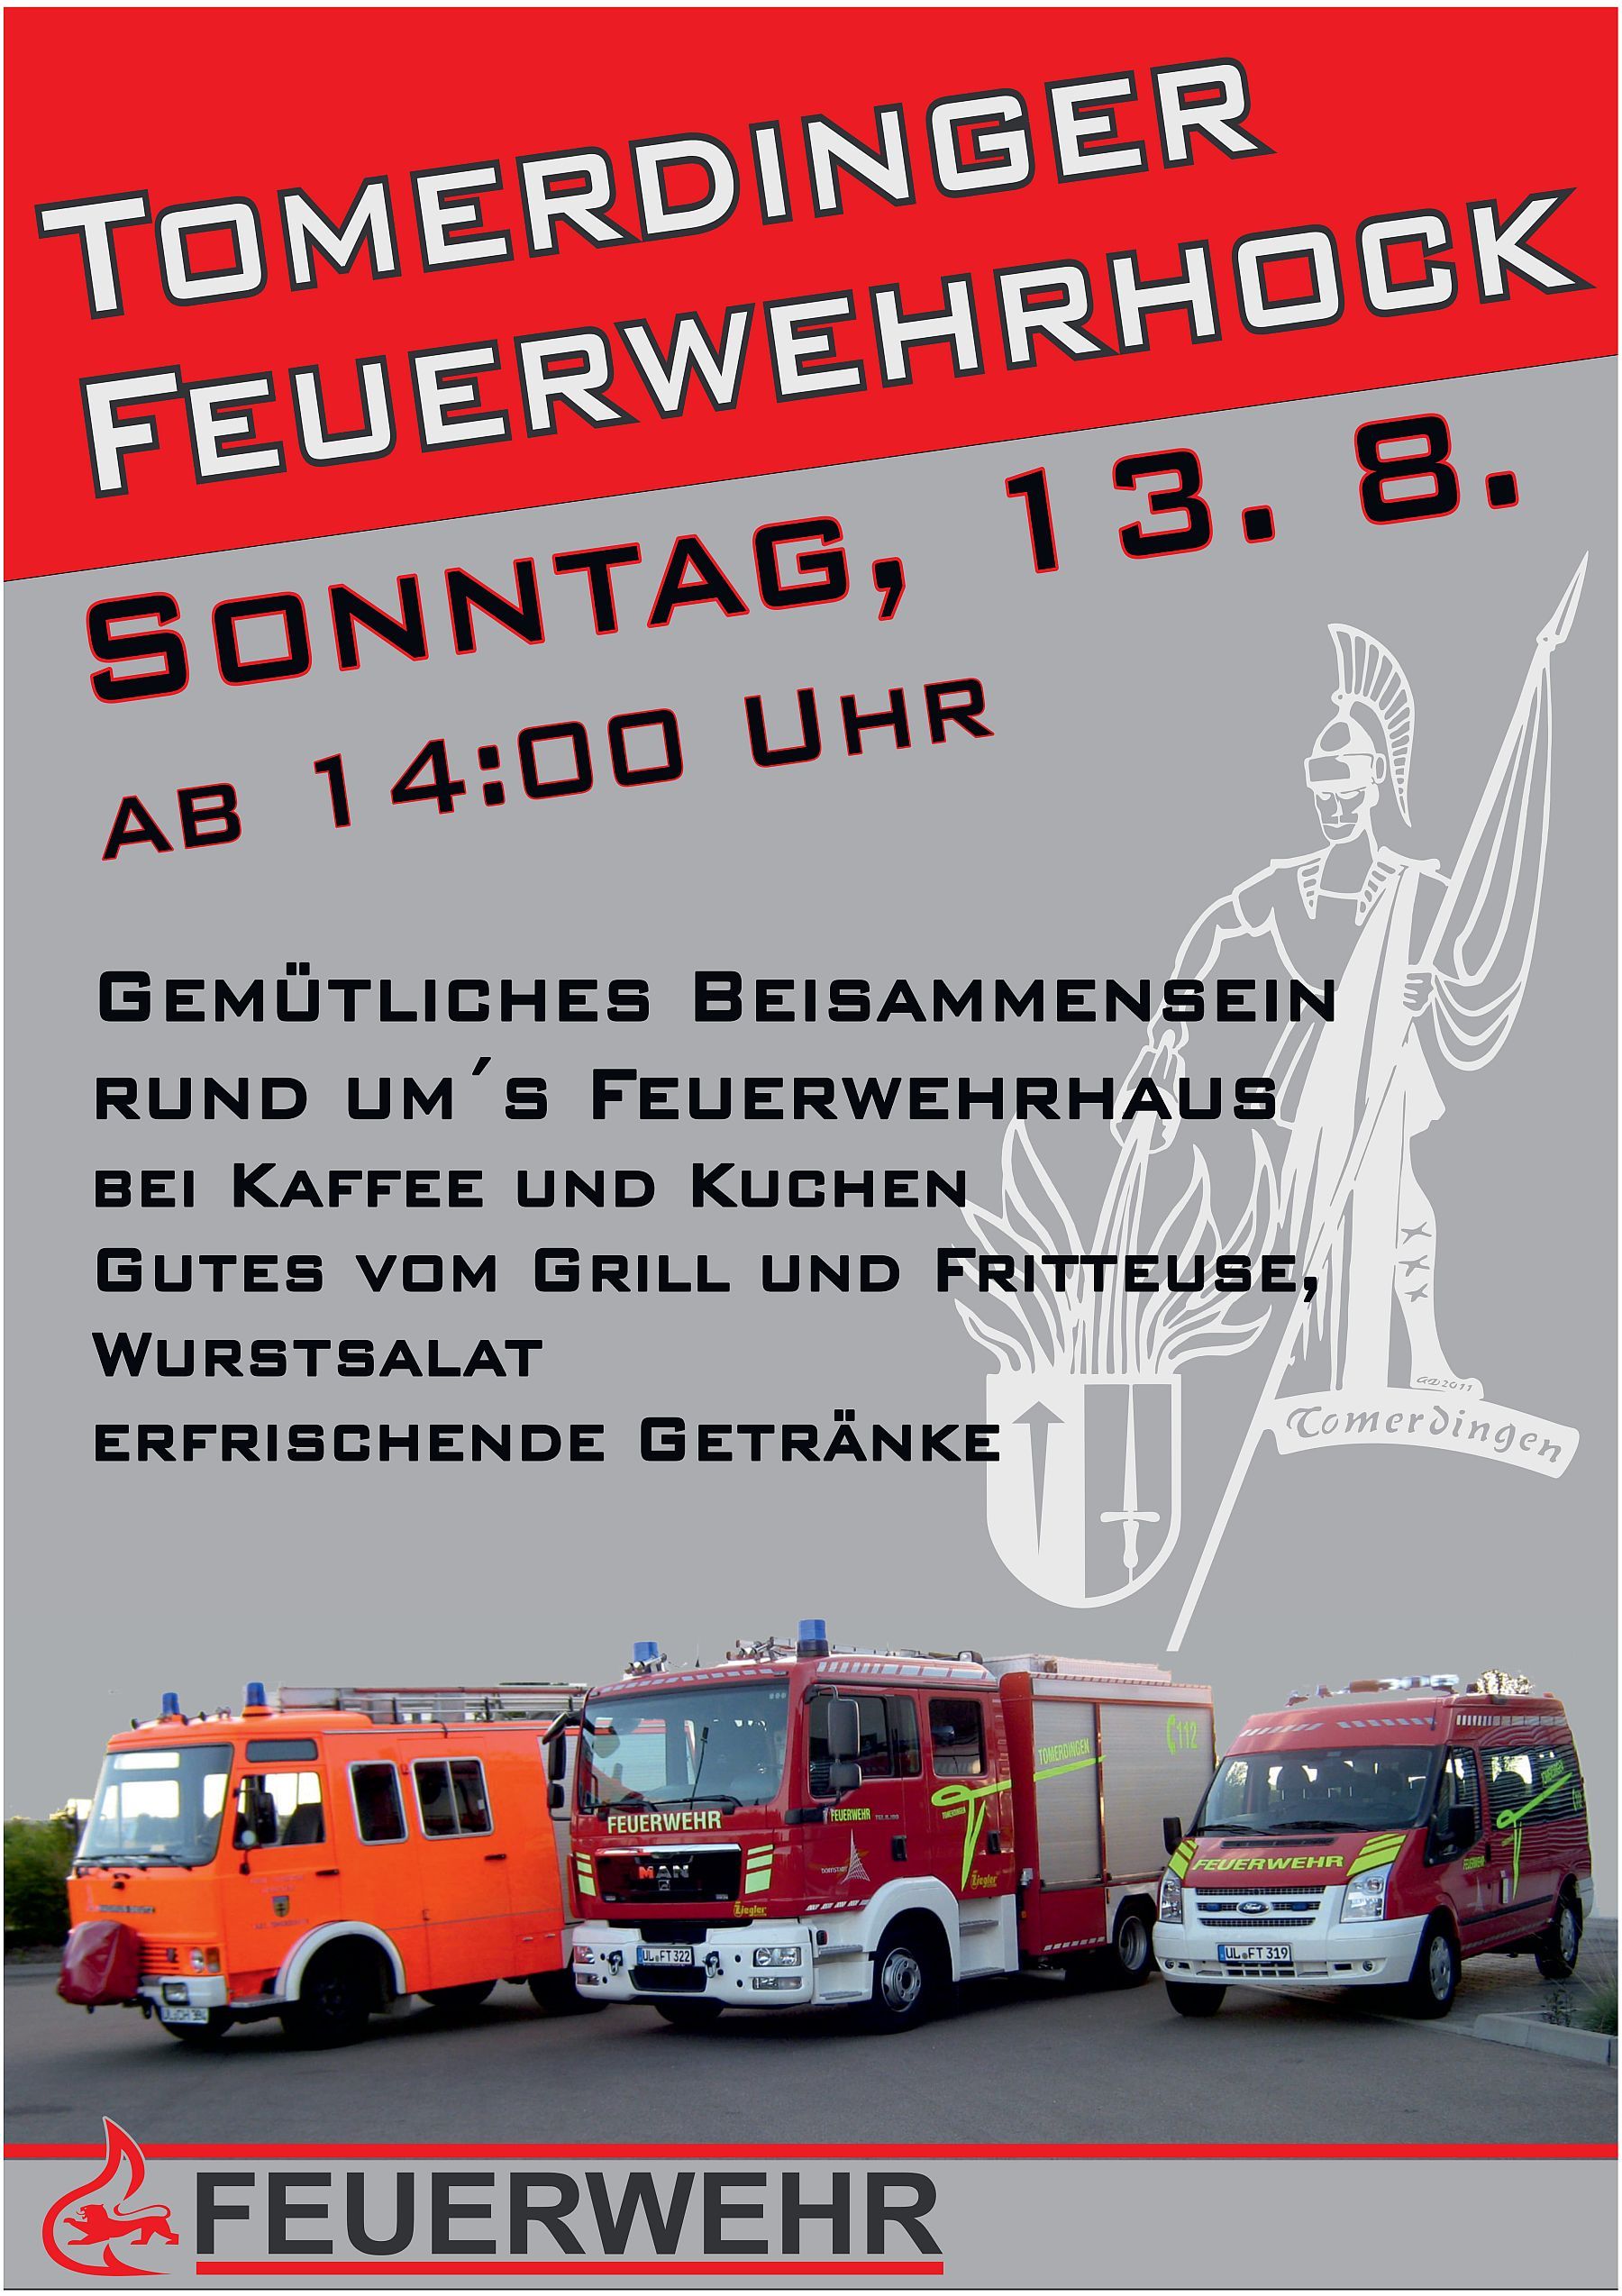 Fw Dornstadt Tomerdinger Feuerwehrhock